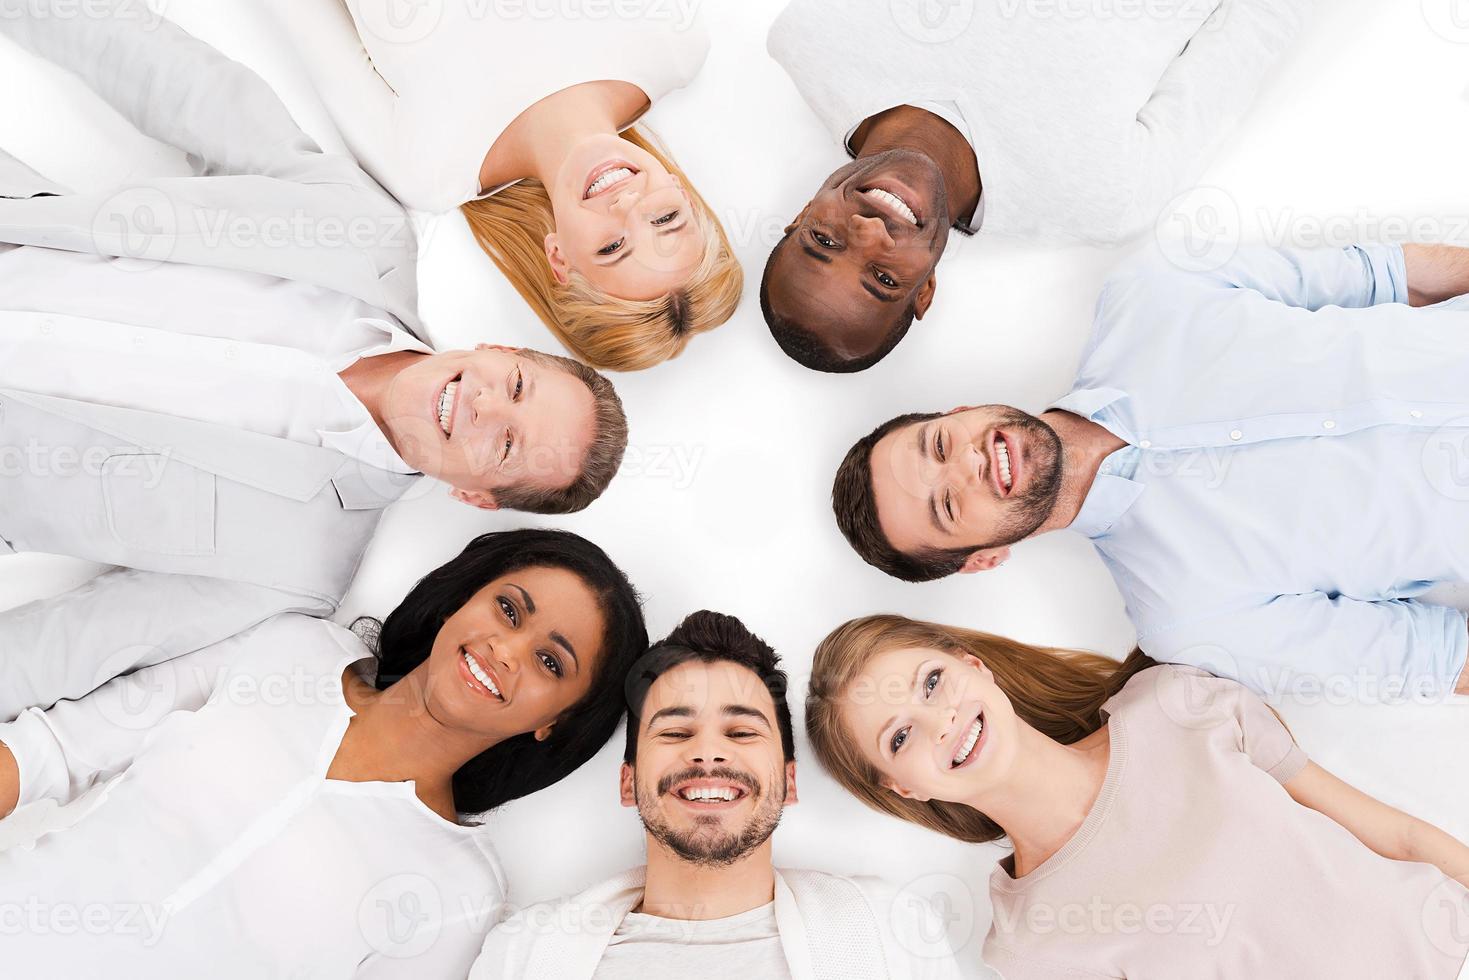 Juntos somos mais fortes. vista superior do grupo alegre de pessoas multiétnicas, deitadas de costas e sorrindo em pé isolado no branco foto